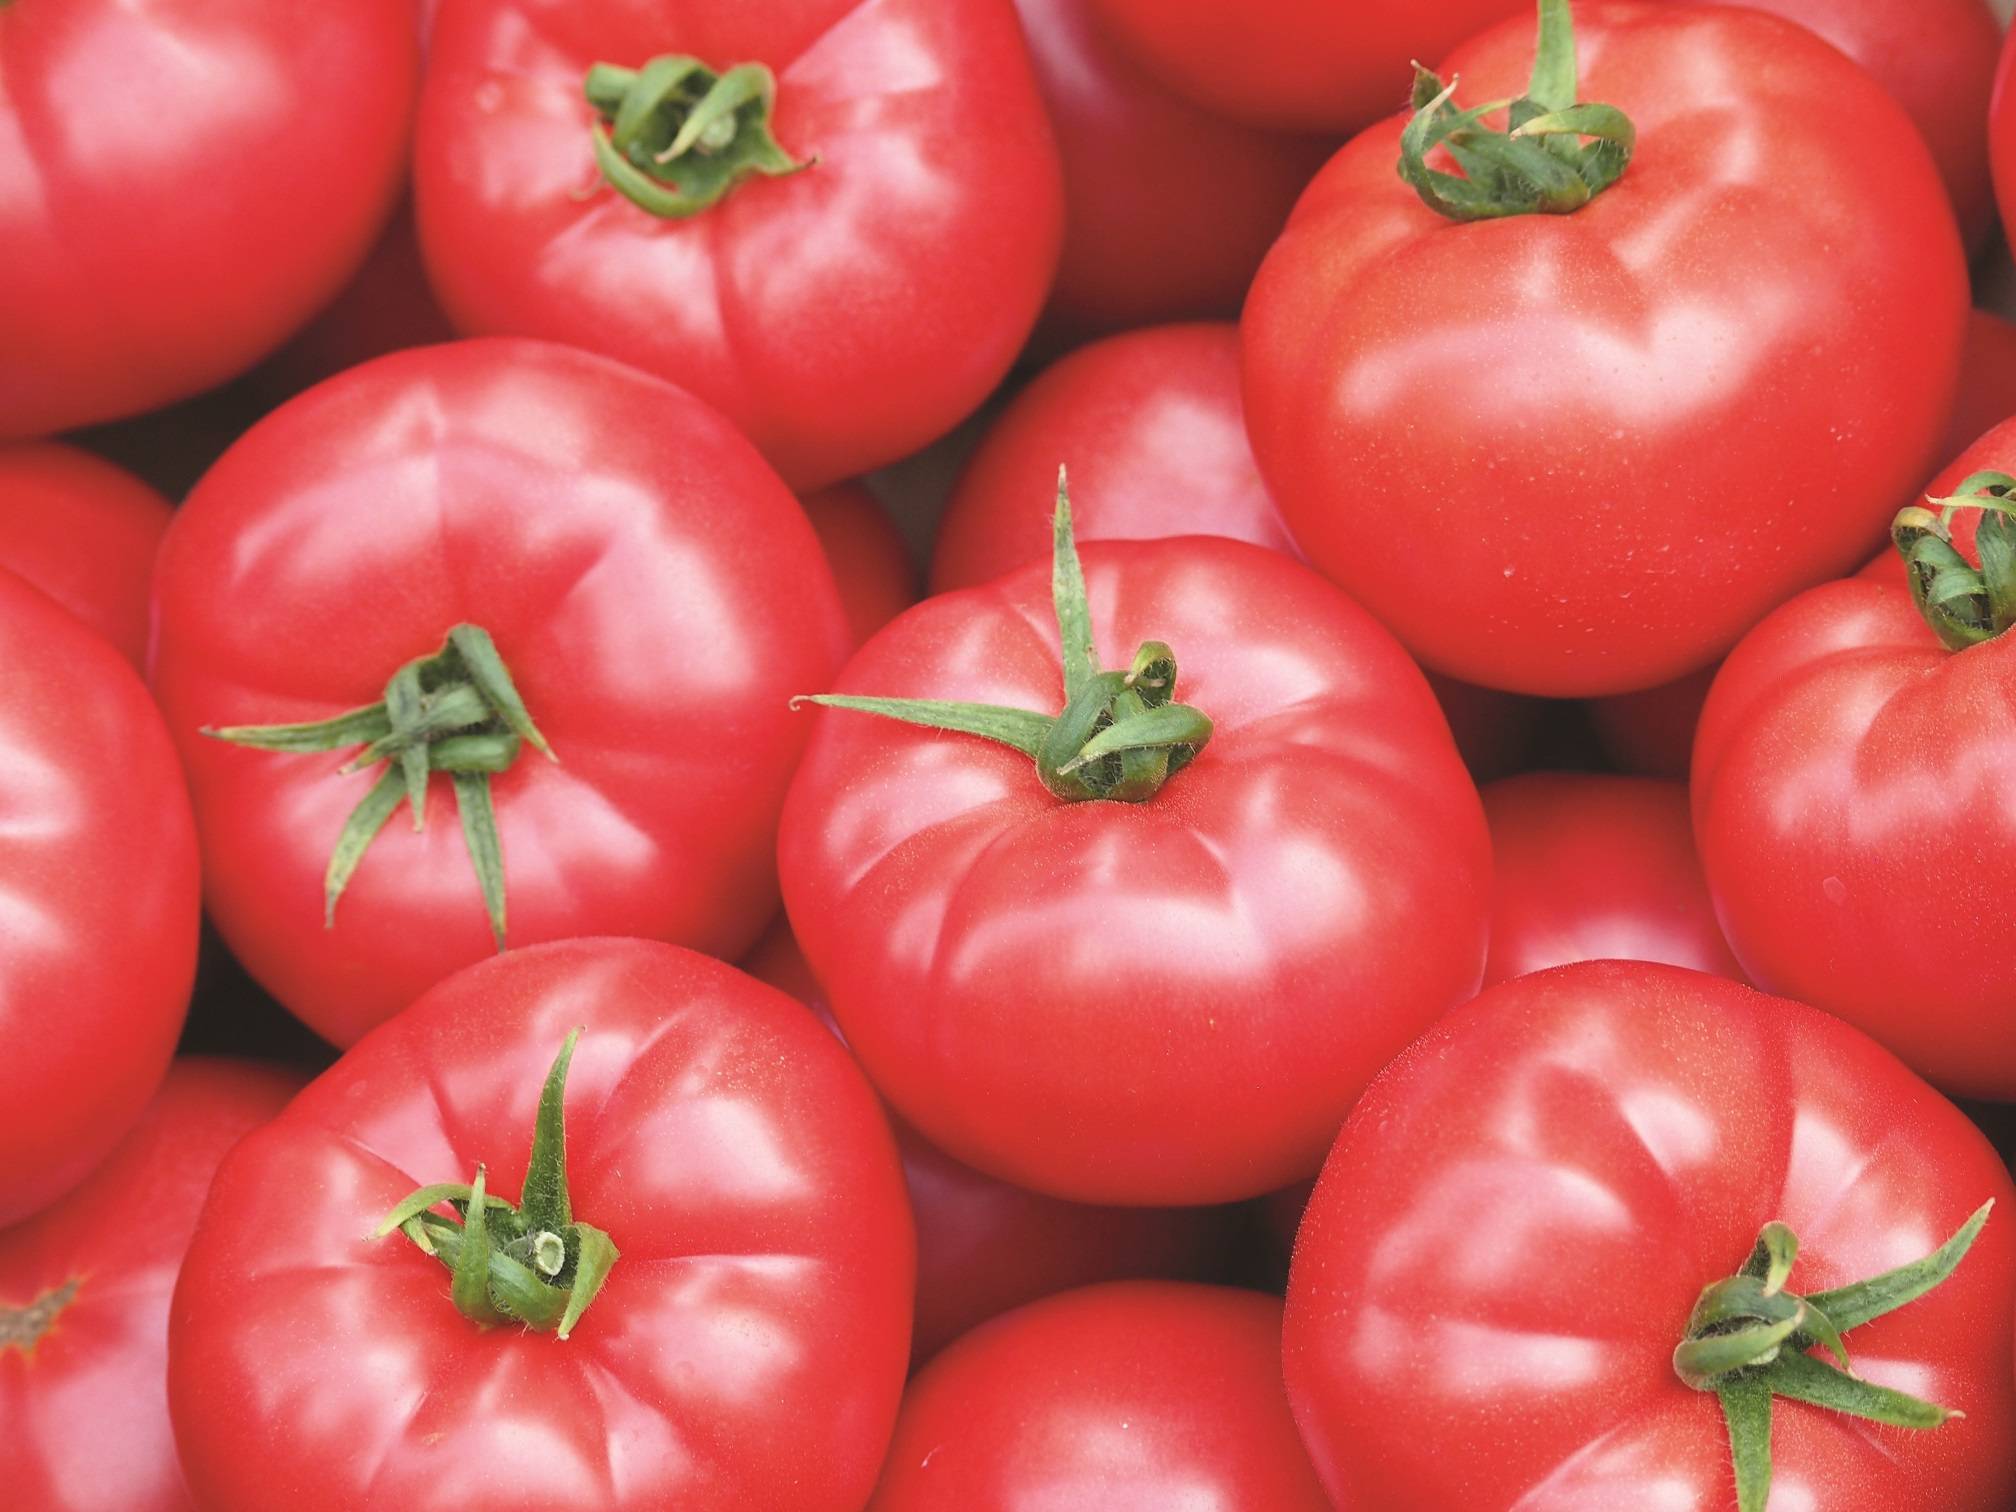 Французский гибрид с аккуратными плодами — томат пинк парадайз f1: описание и характеристики сорта